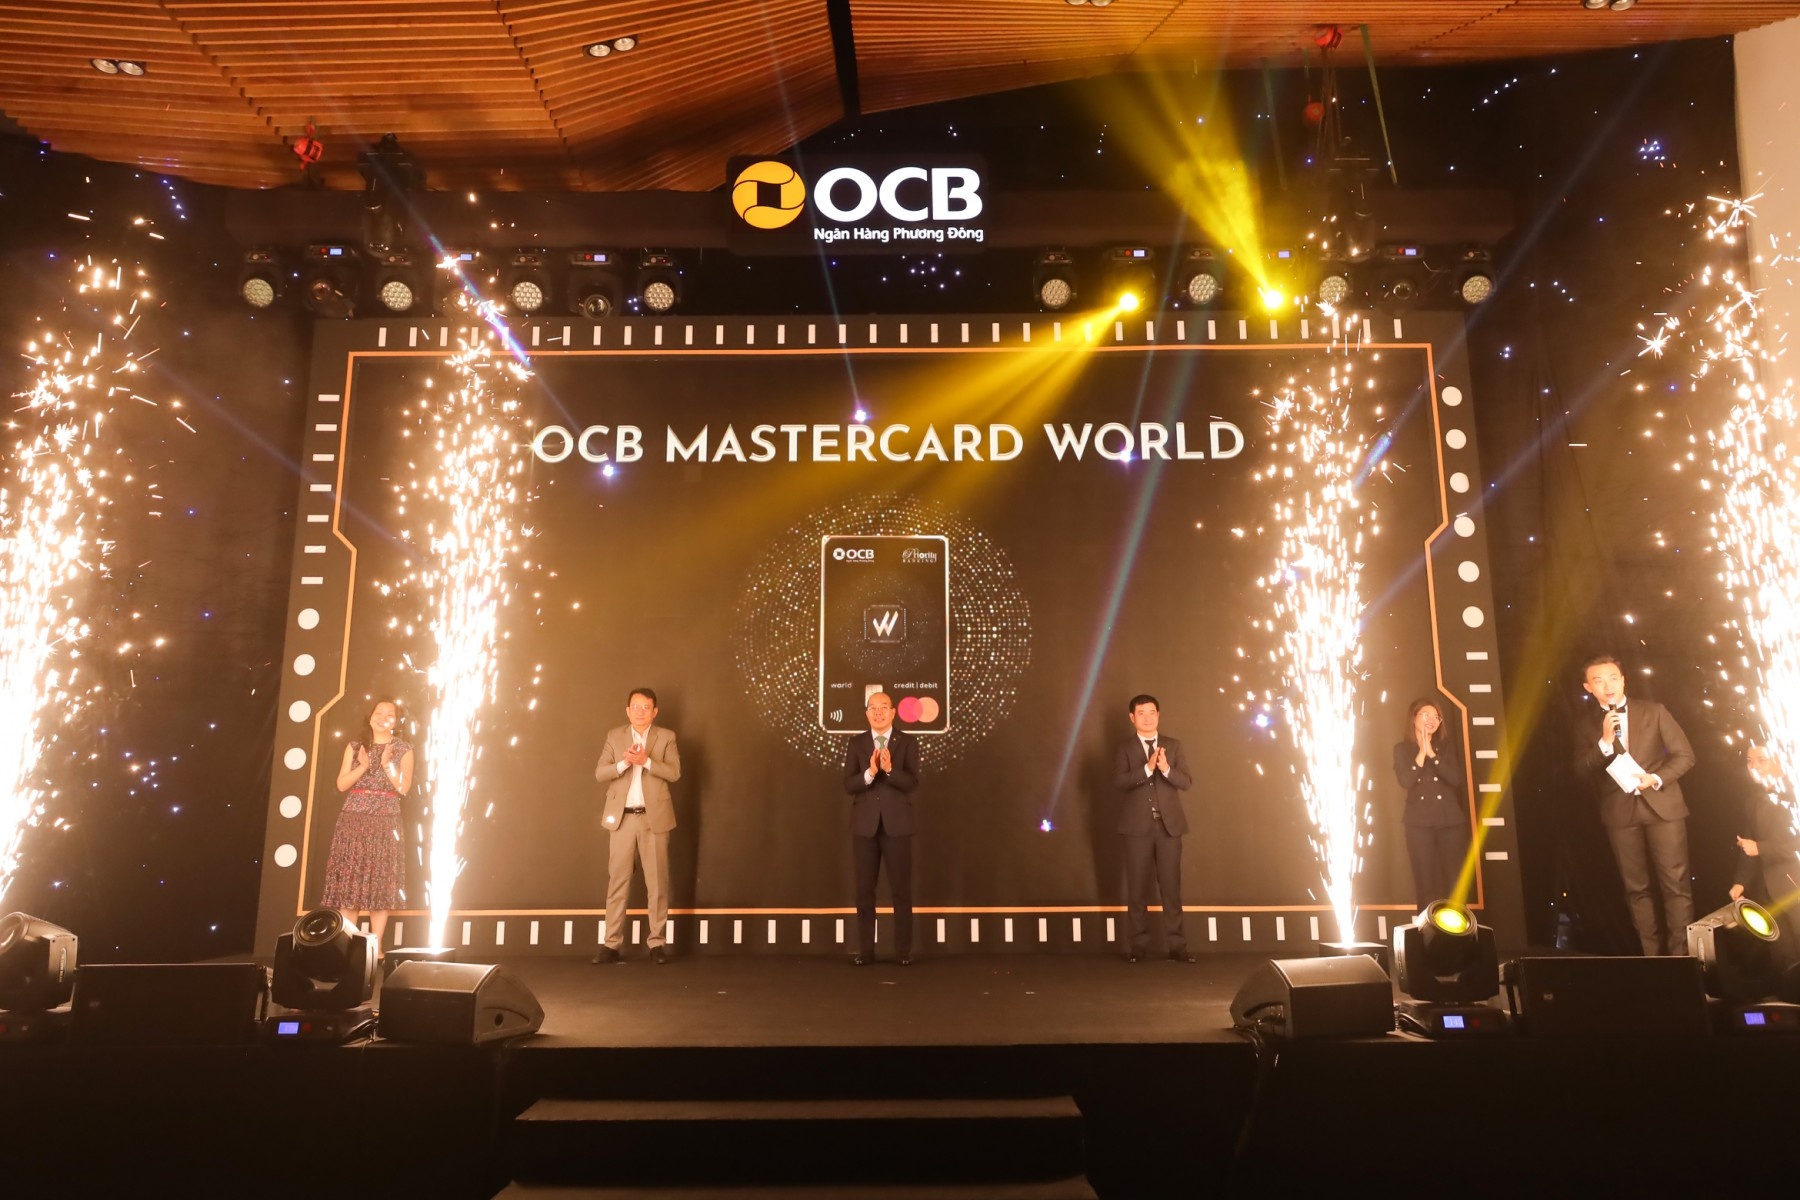 OCB Mastercard World chính là sự kết hợp hoàn hảo giữa công nghệ vượt trội,